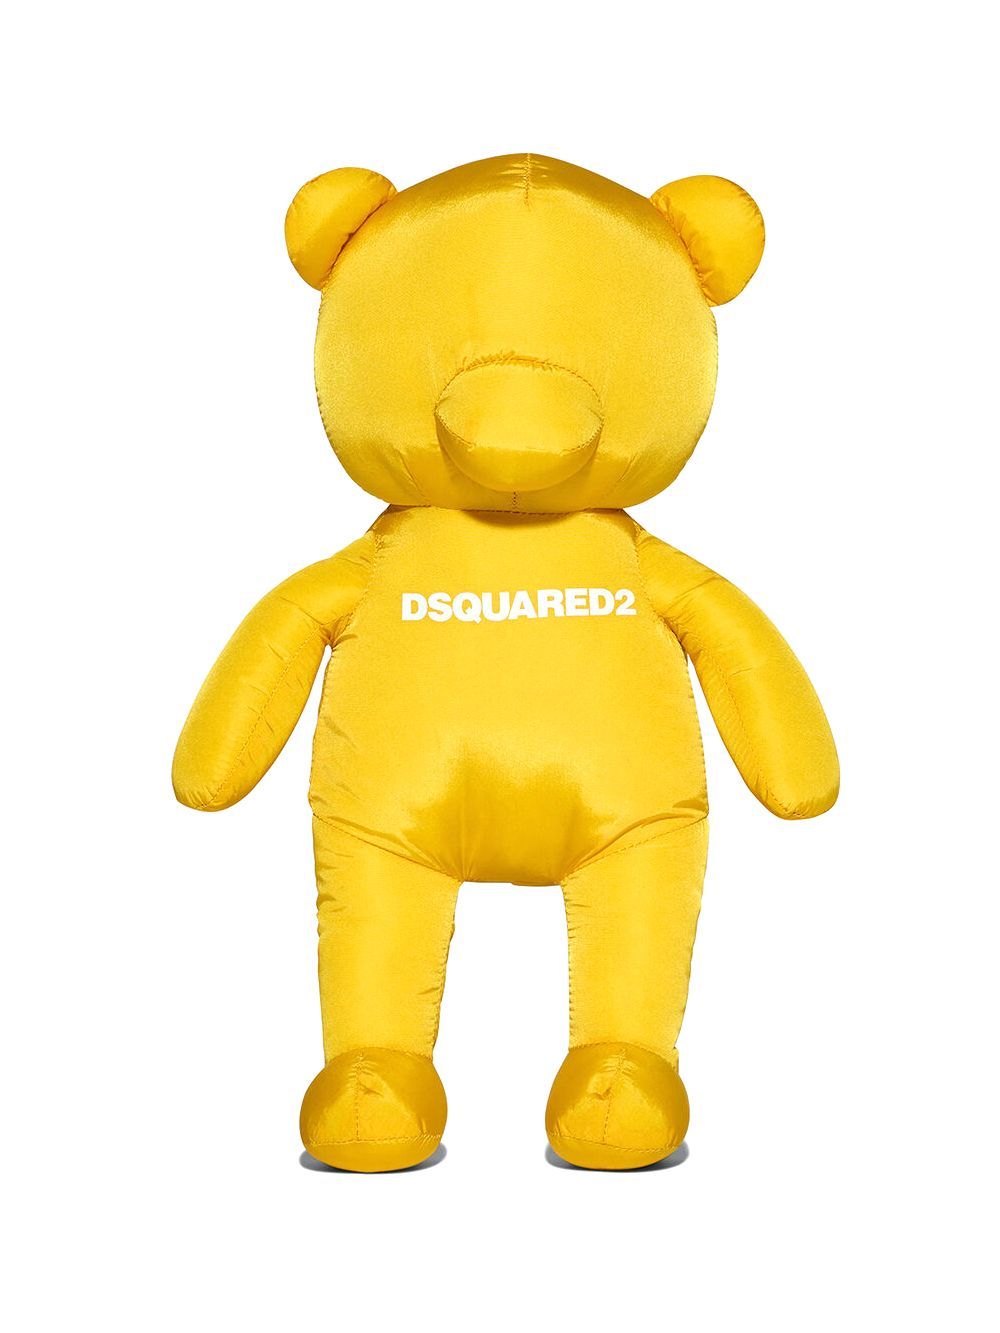 メンズ【dsquared2】Travel Lite Teddy Bear Toy